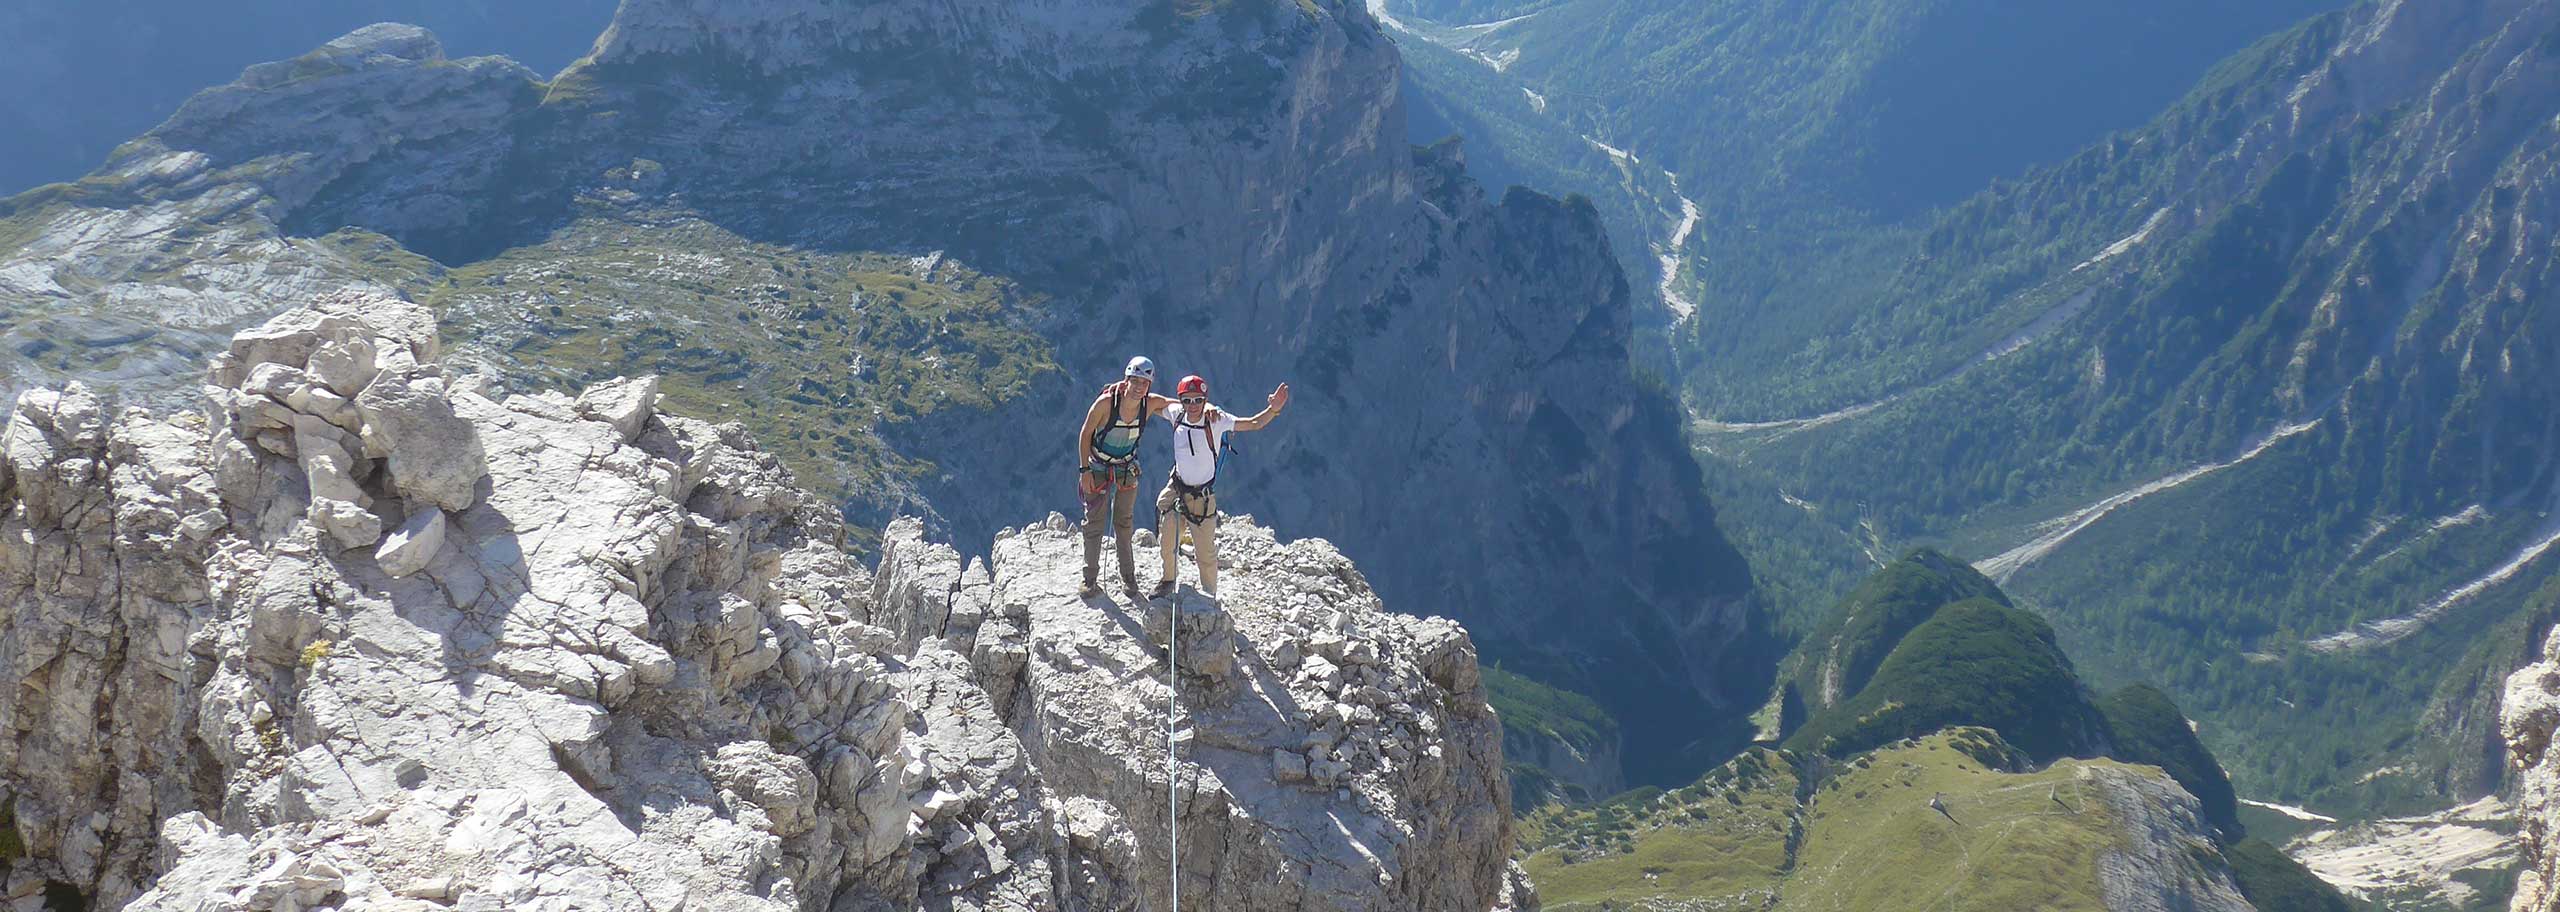 Arrampicata con Guida Alpina in Val di Zoldo